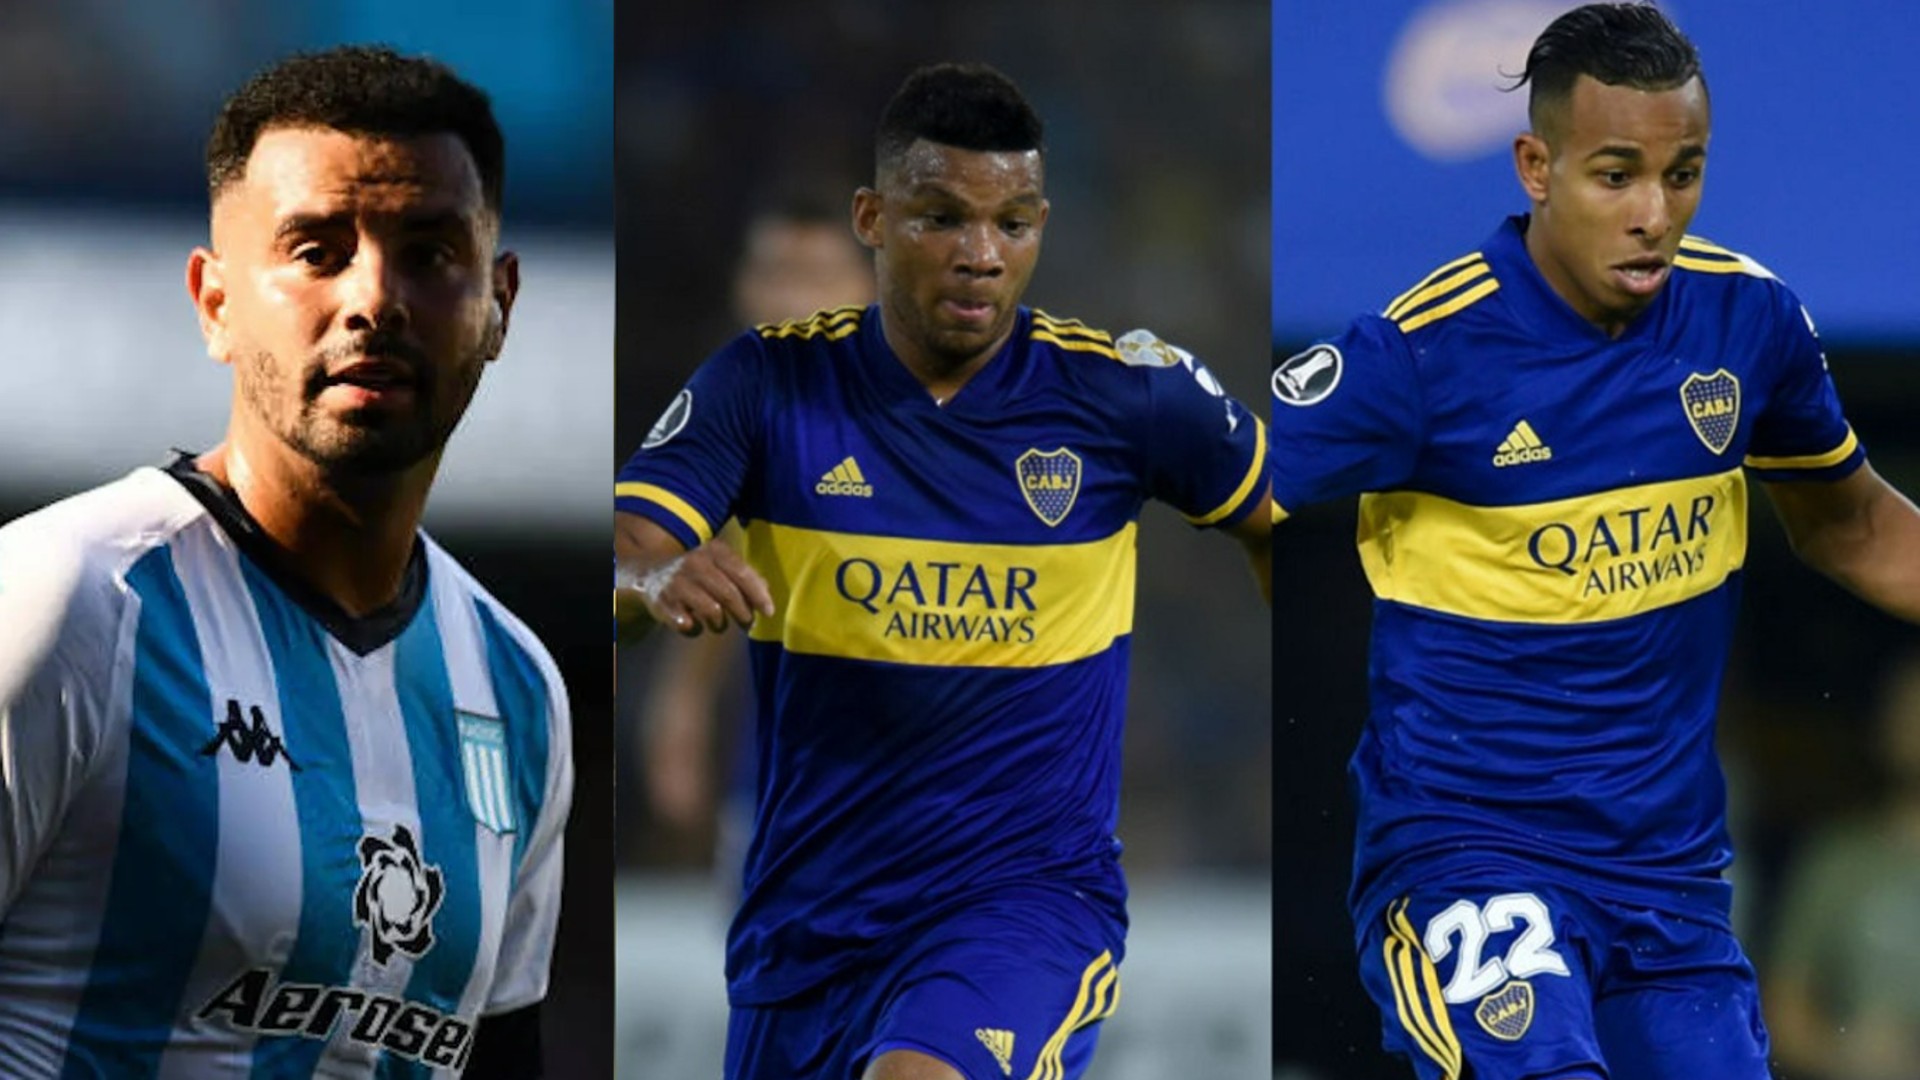 Duelo de colombianos en el fútbol argentino. Racing de Avellaneda se enfrenta a Boca Juniors